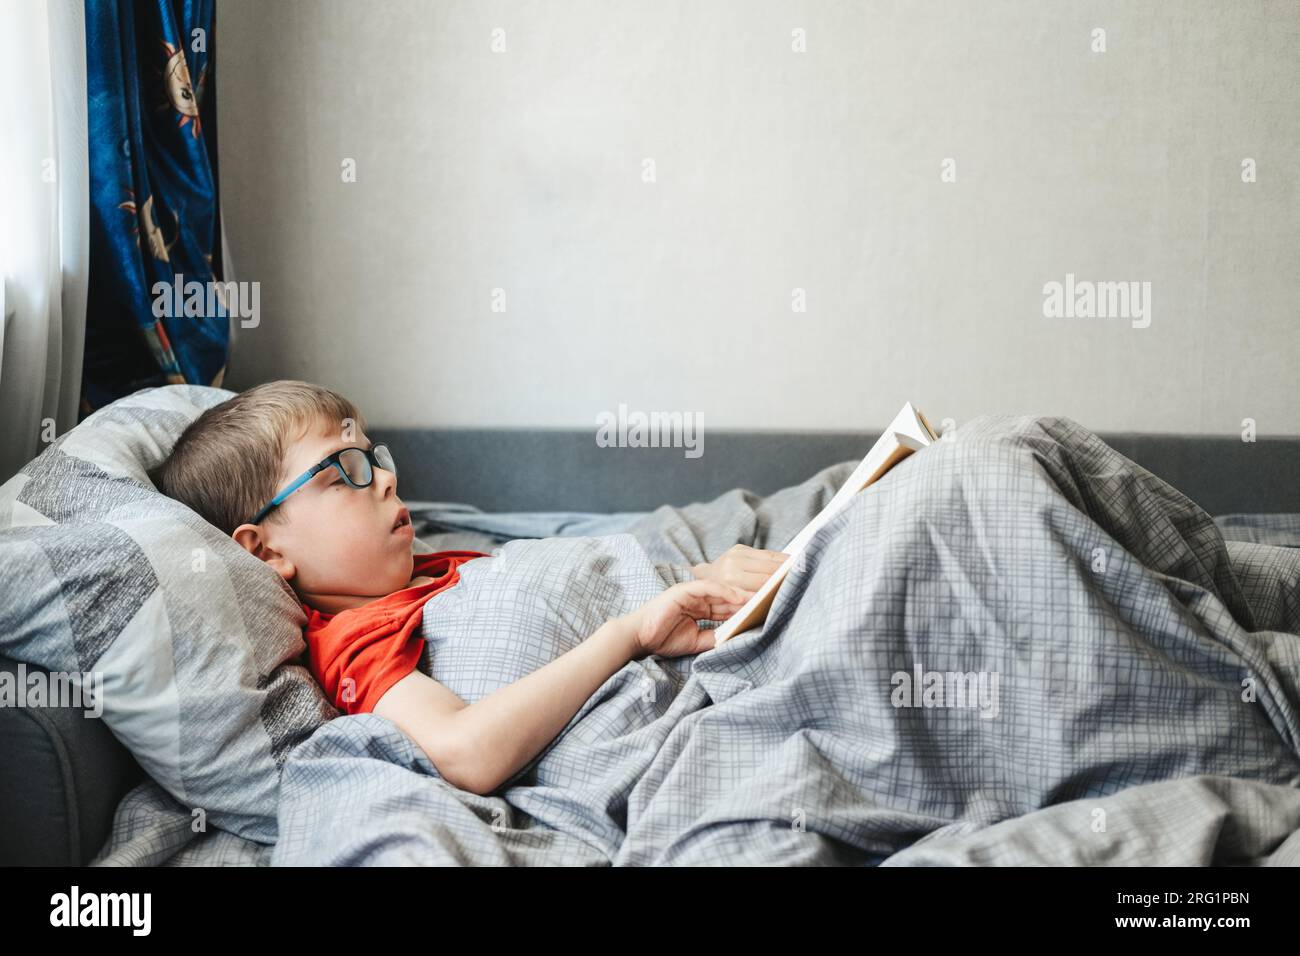 chico con gafas se encuentra en una cama debajo de una manta y lee un libro. Un niño en edad de escuela primaria está leyendo un libro en su cama. Foto de stock